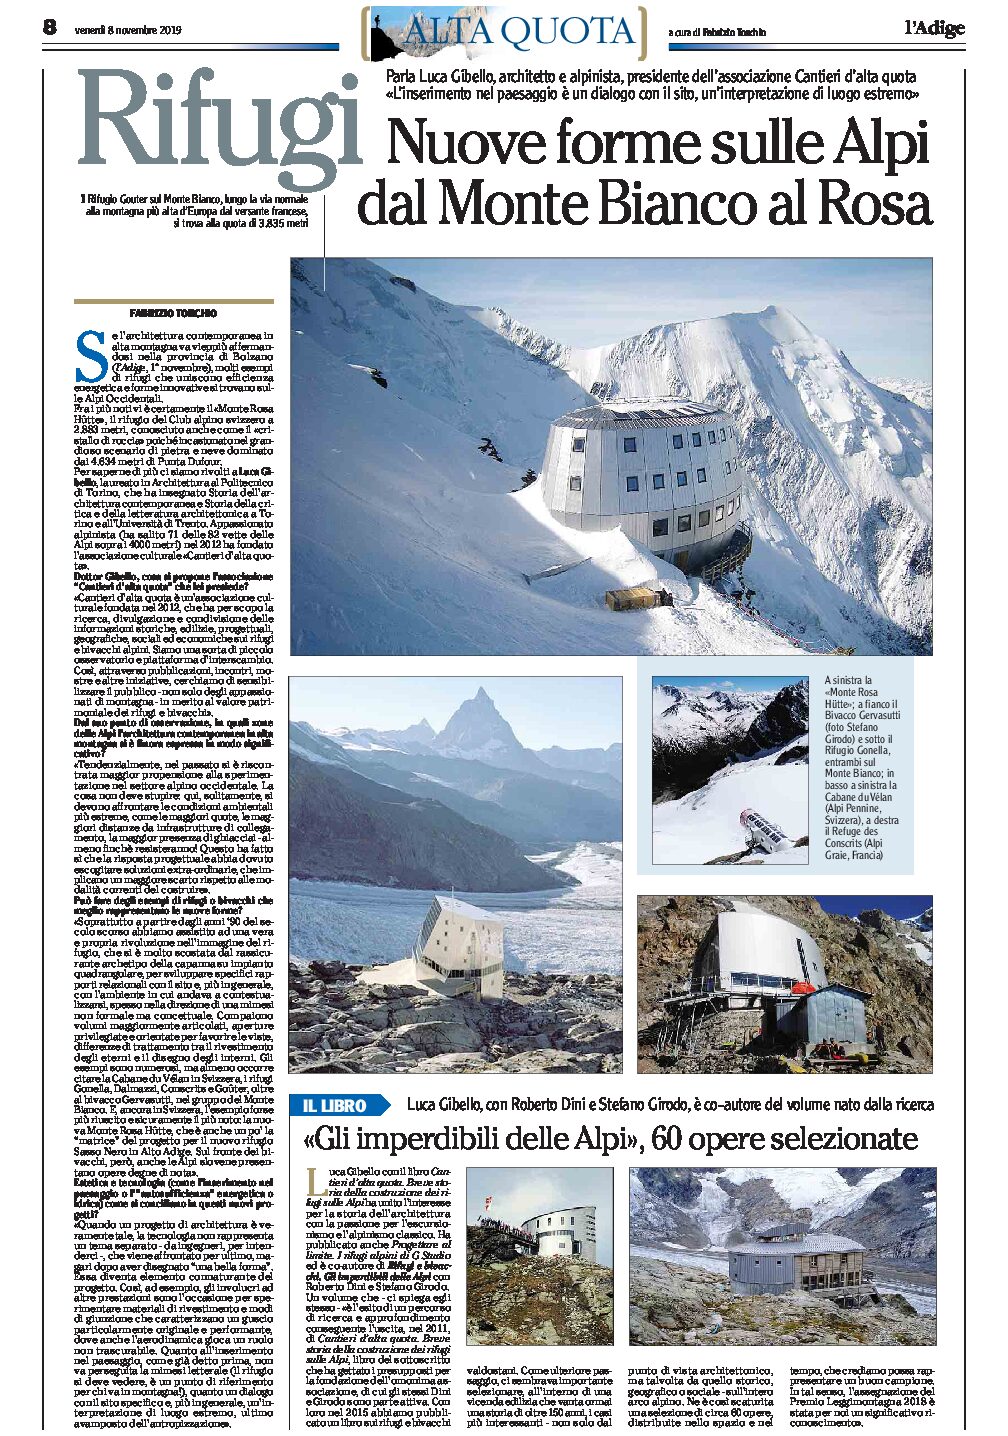 Rifugi: nuove forme sulle Alpi, dal Monte Bianco al Rosa